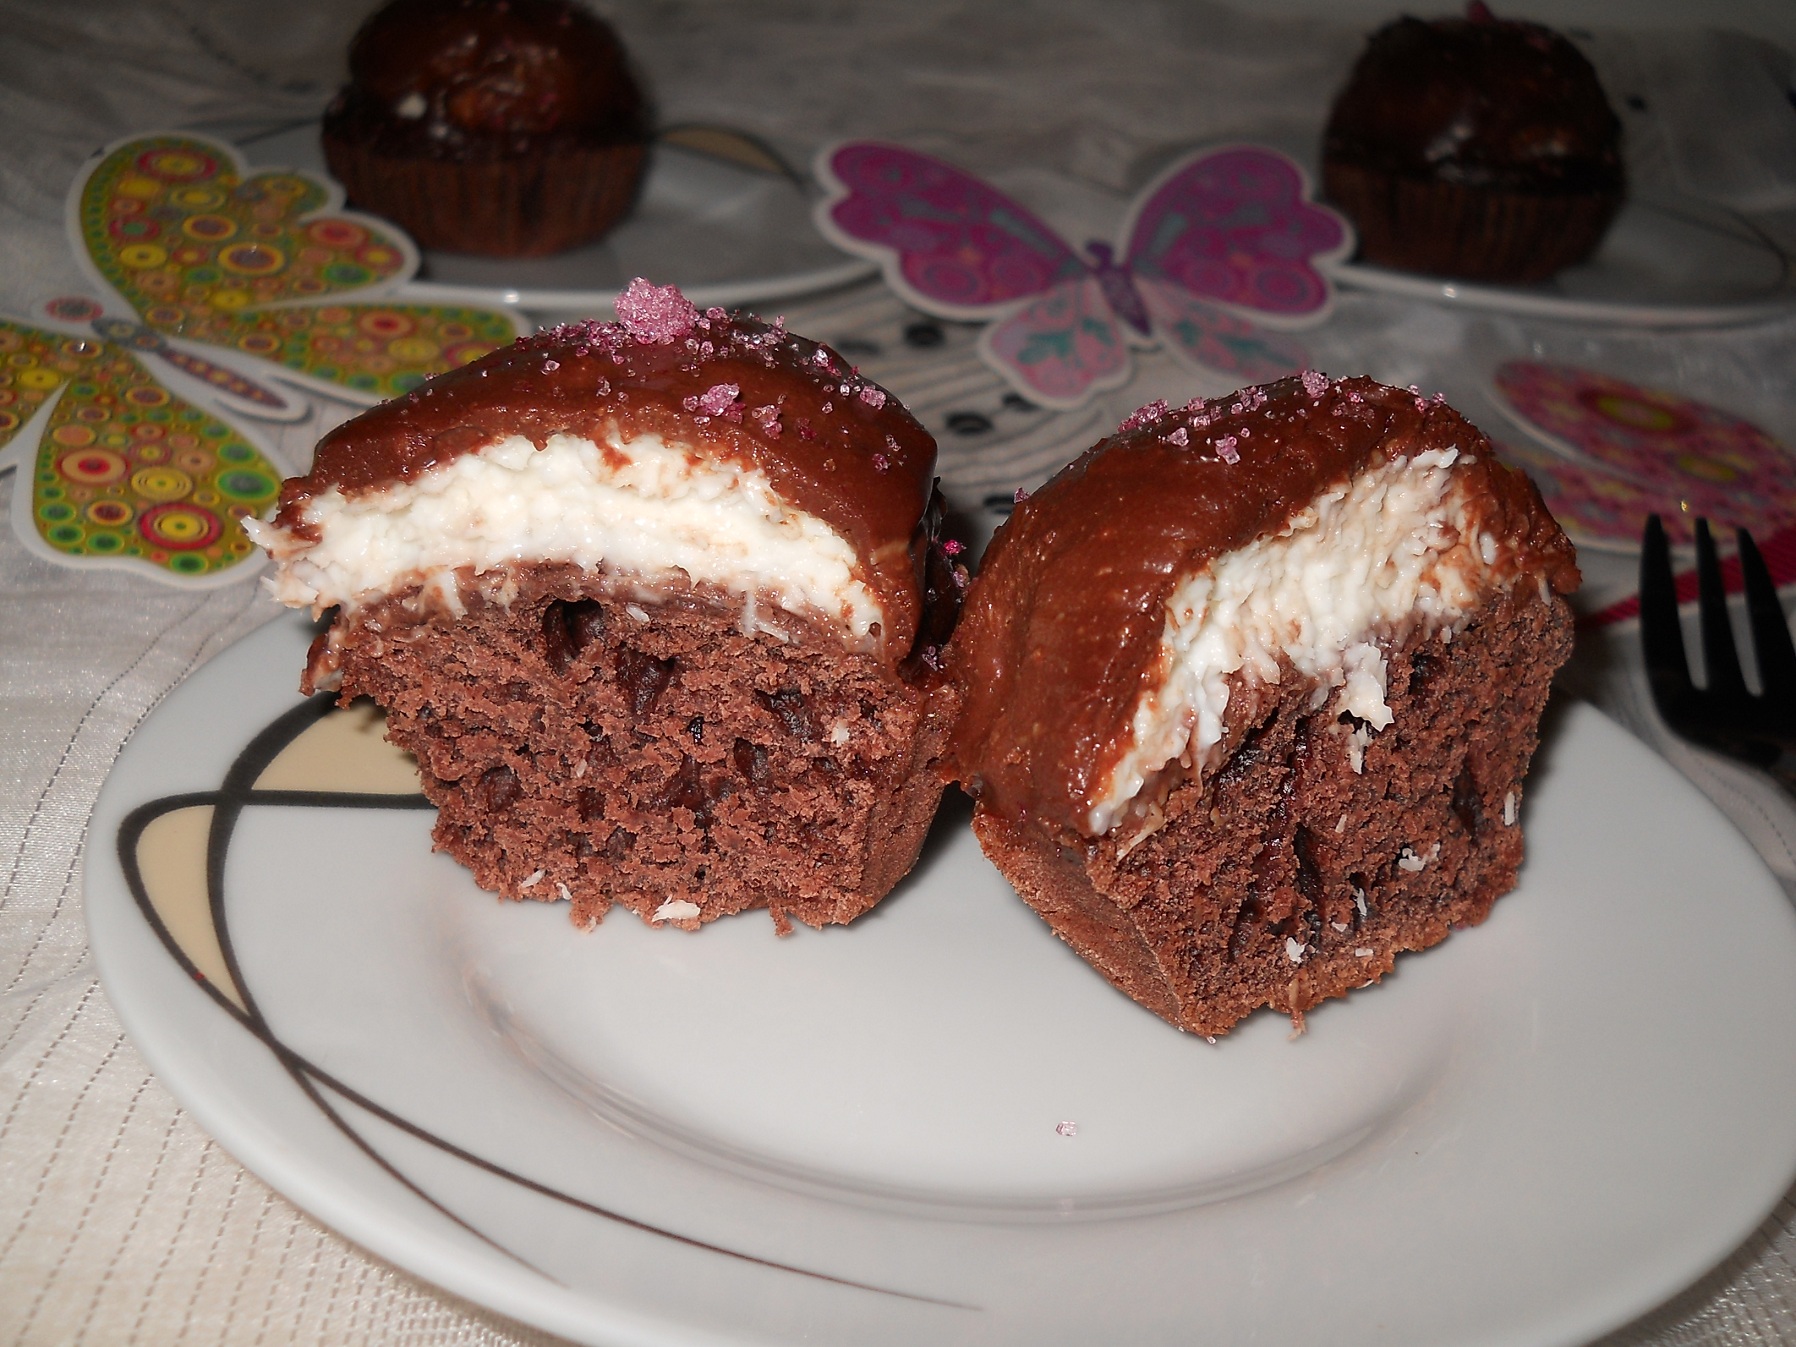 Cupcakes sub cupola de cocos